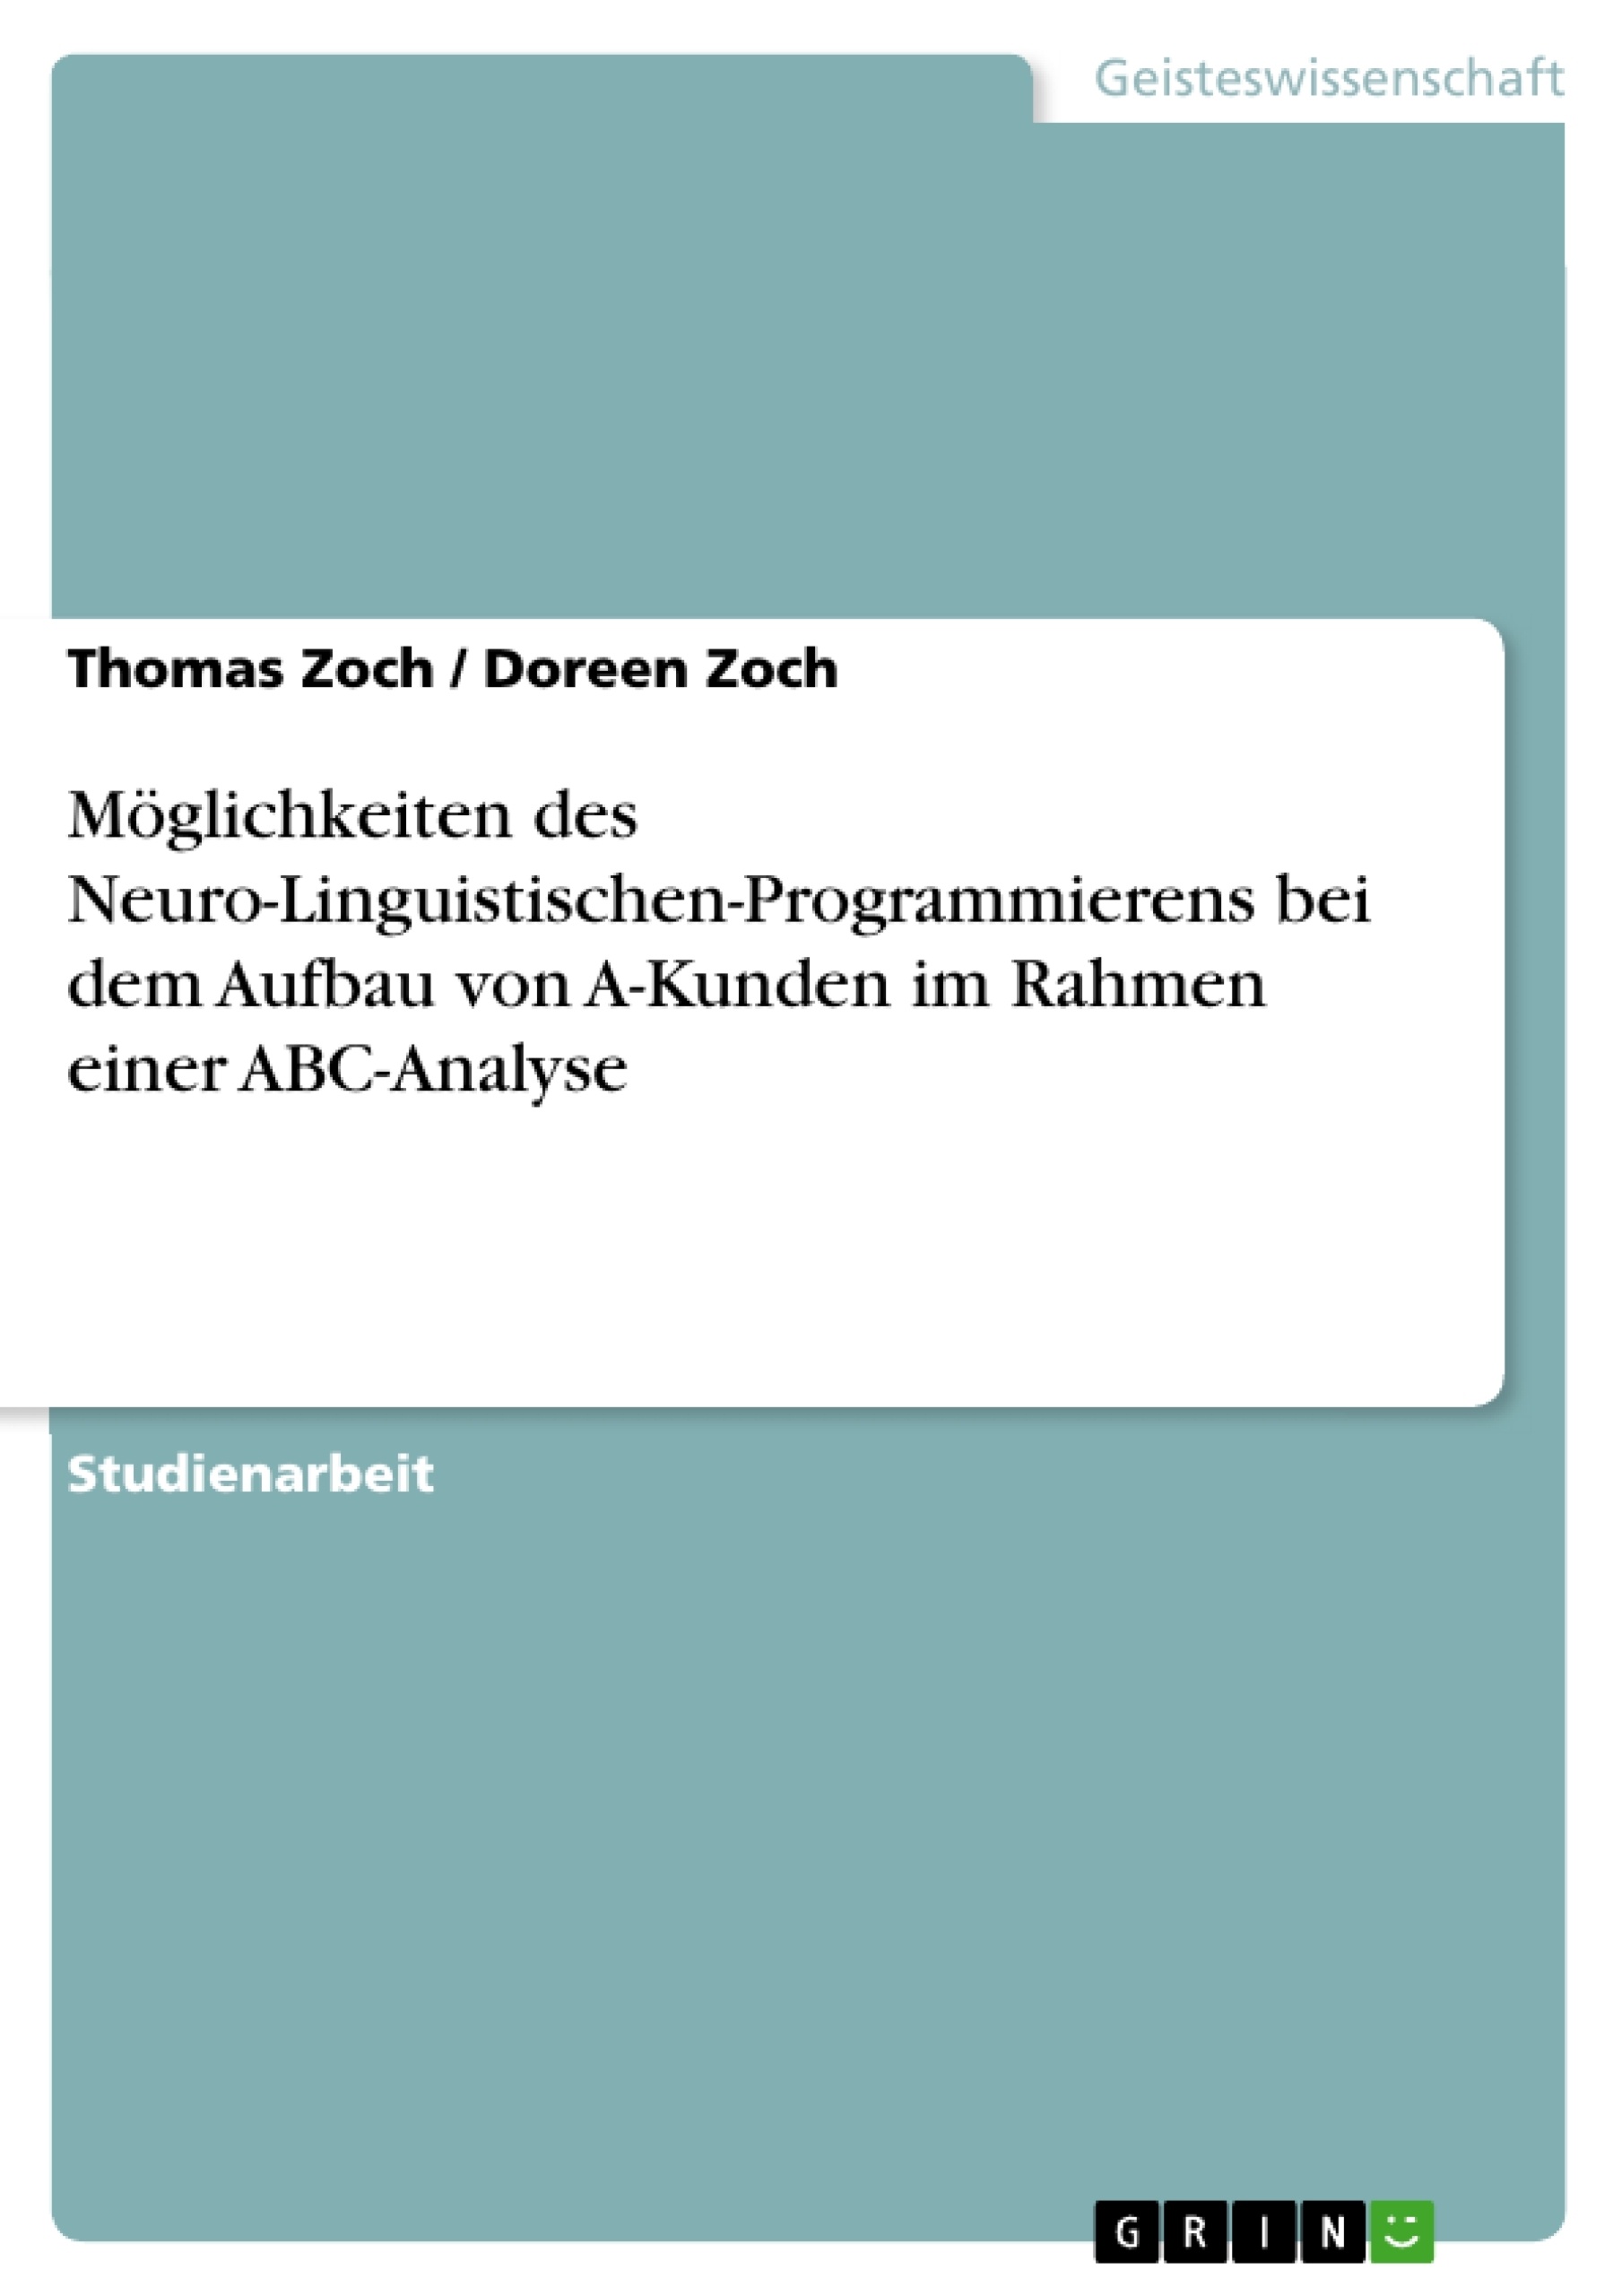 Title: Möglichkeiten des Neuro-Linguistischen-Programmierens bei dem Aufbau von A-Kunden im Rahmen einer ABC-Analyse